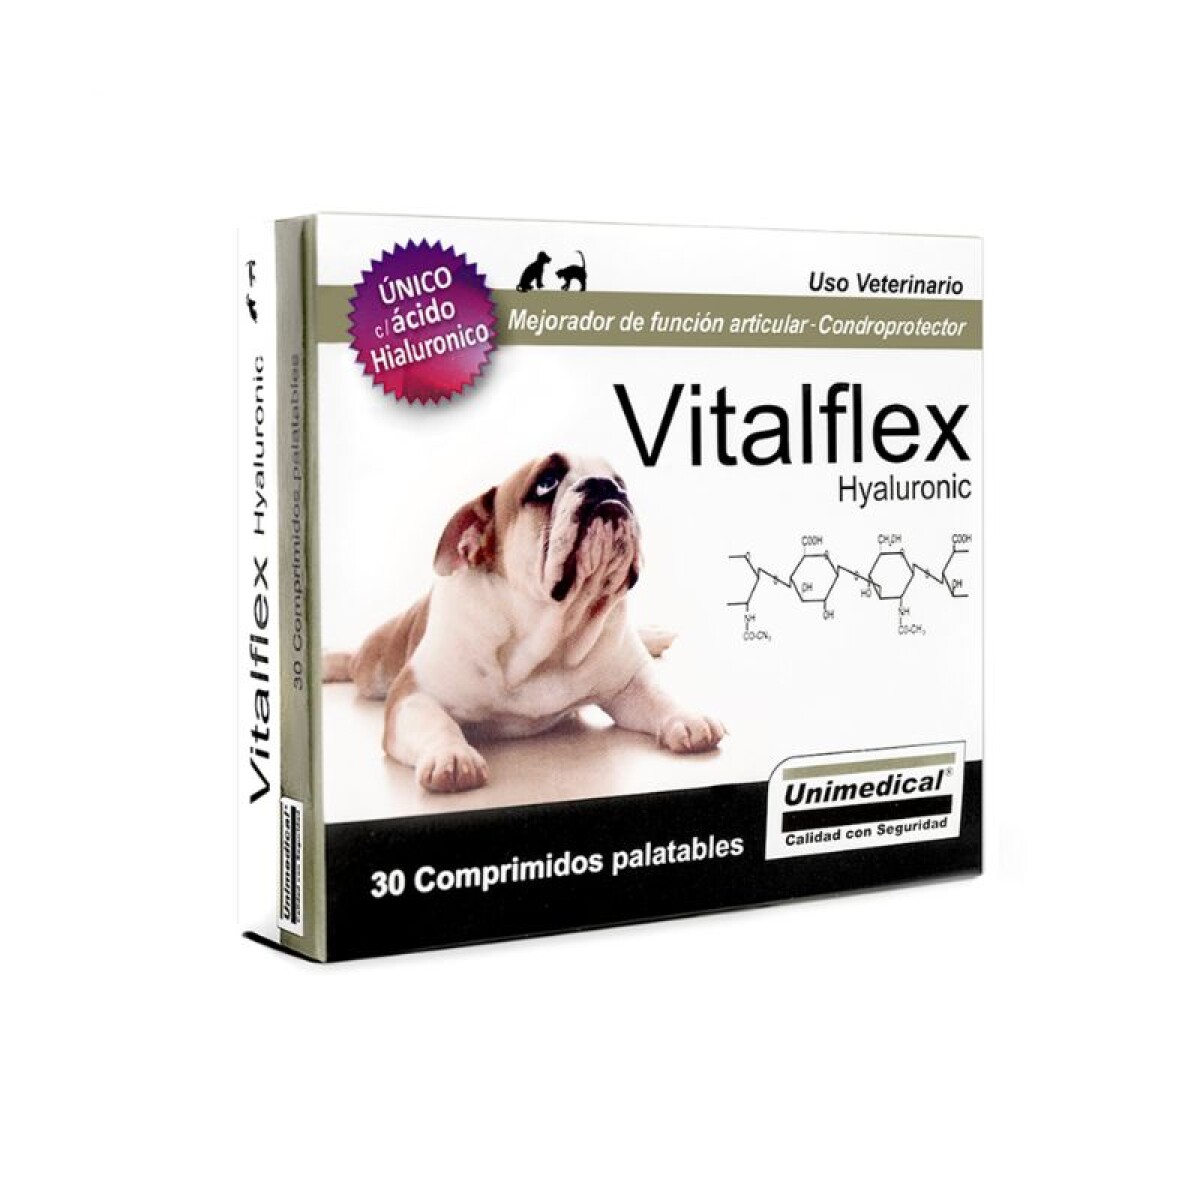 VITALFLEX HYALURONIC - Vitalflex Hyaluronic 